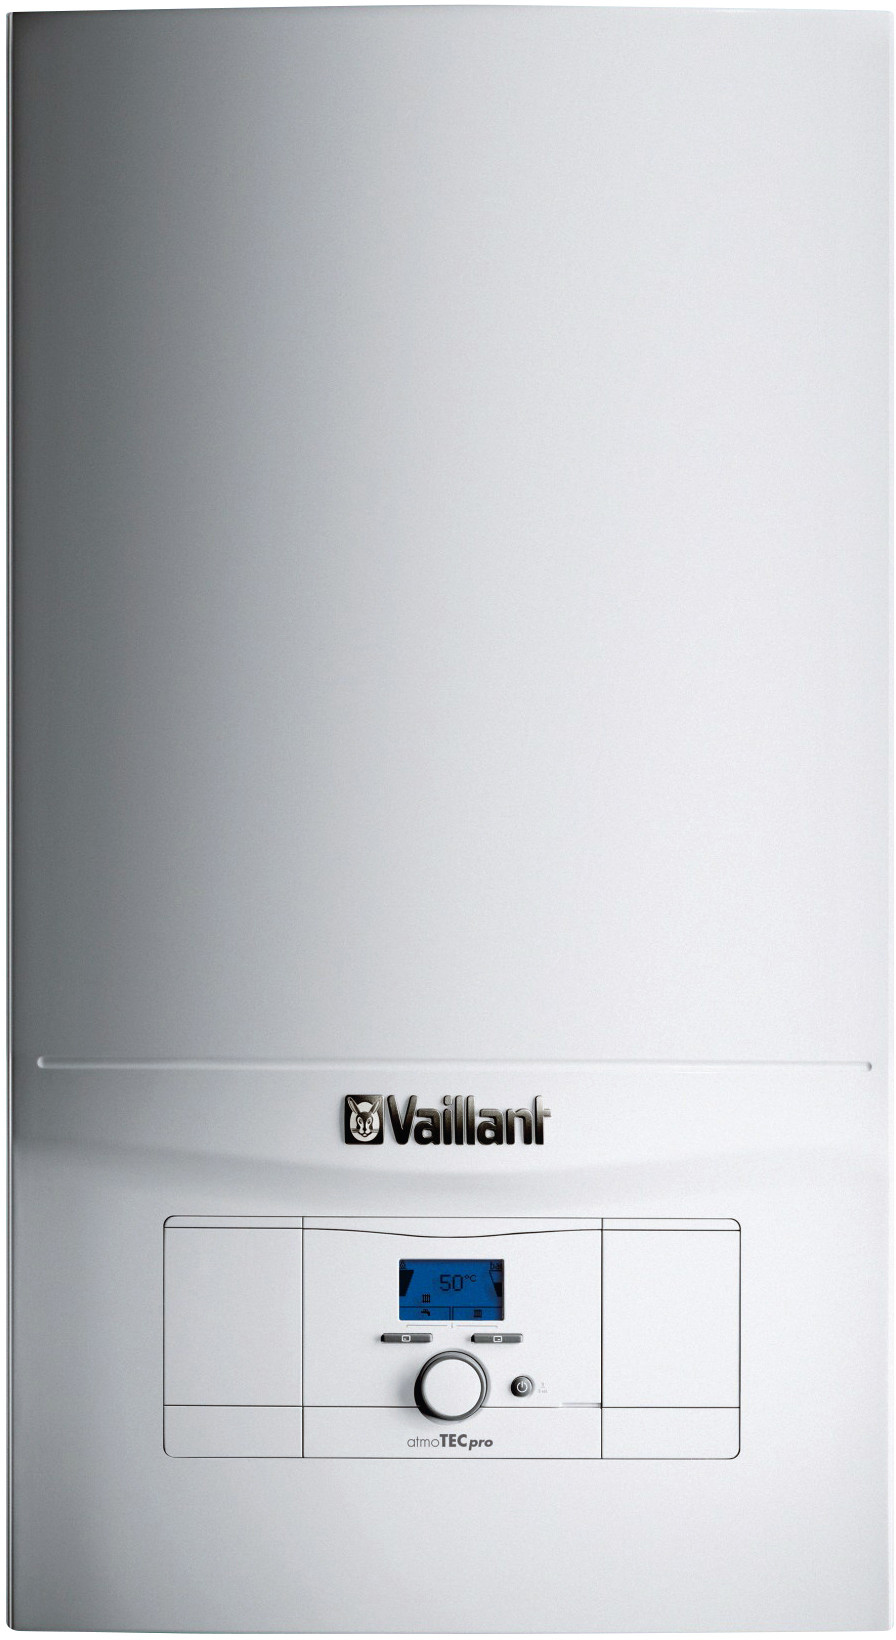 Газовый котел Vaillant atmoTec Pro VUW 240/5-3 в интернет-магазине, главное фото